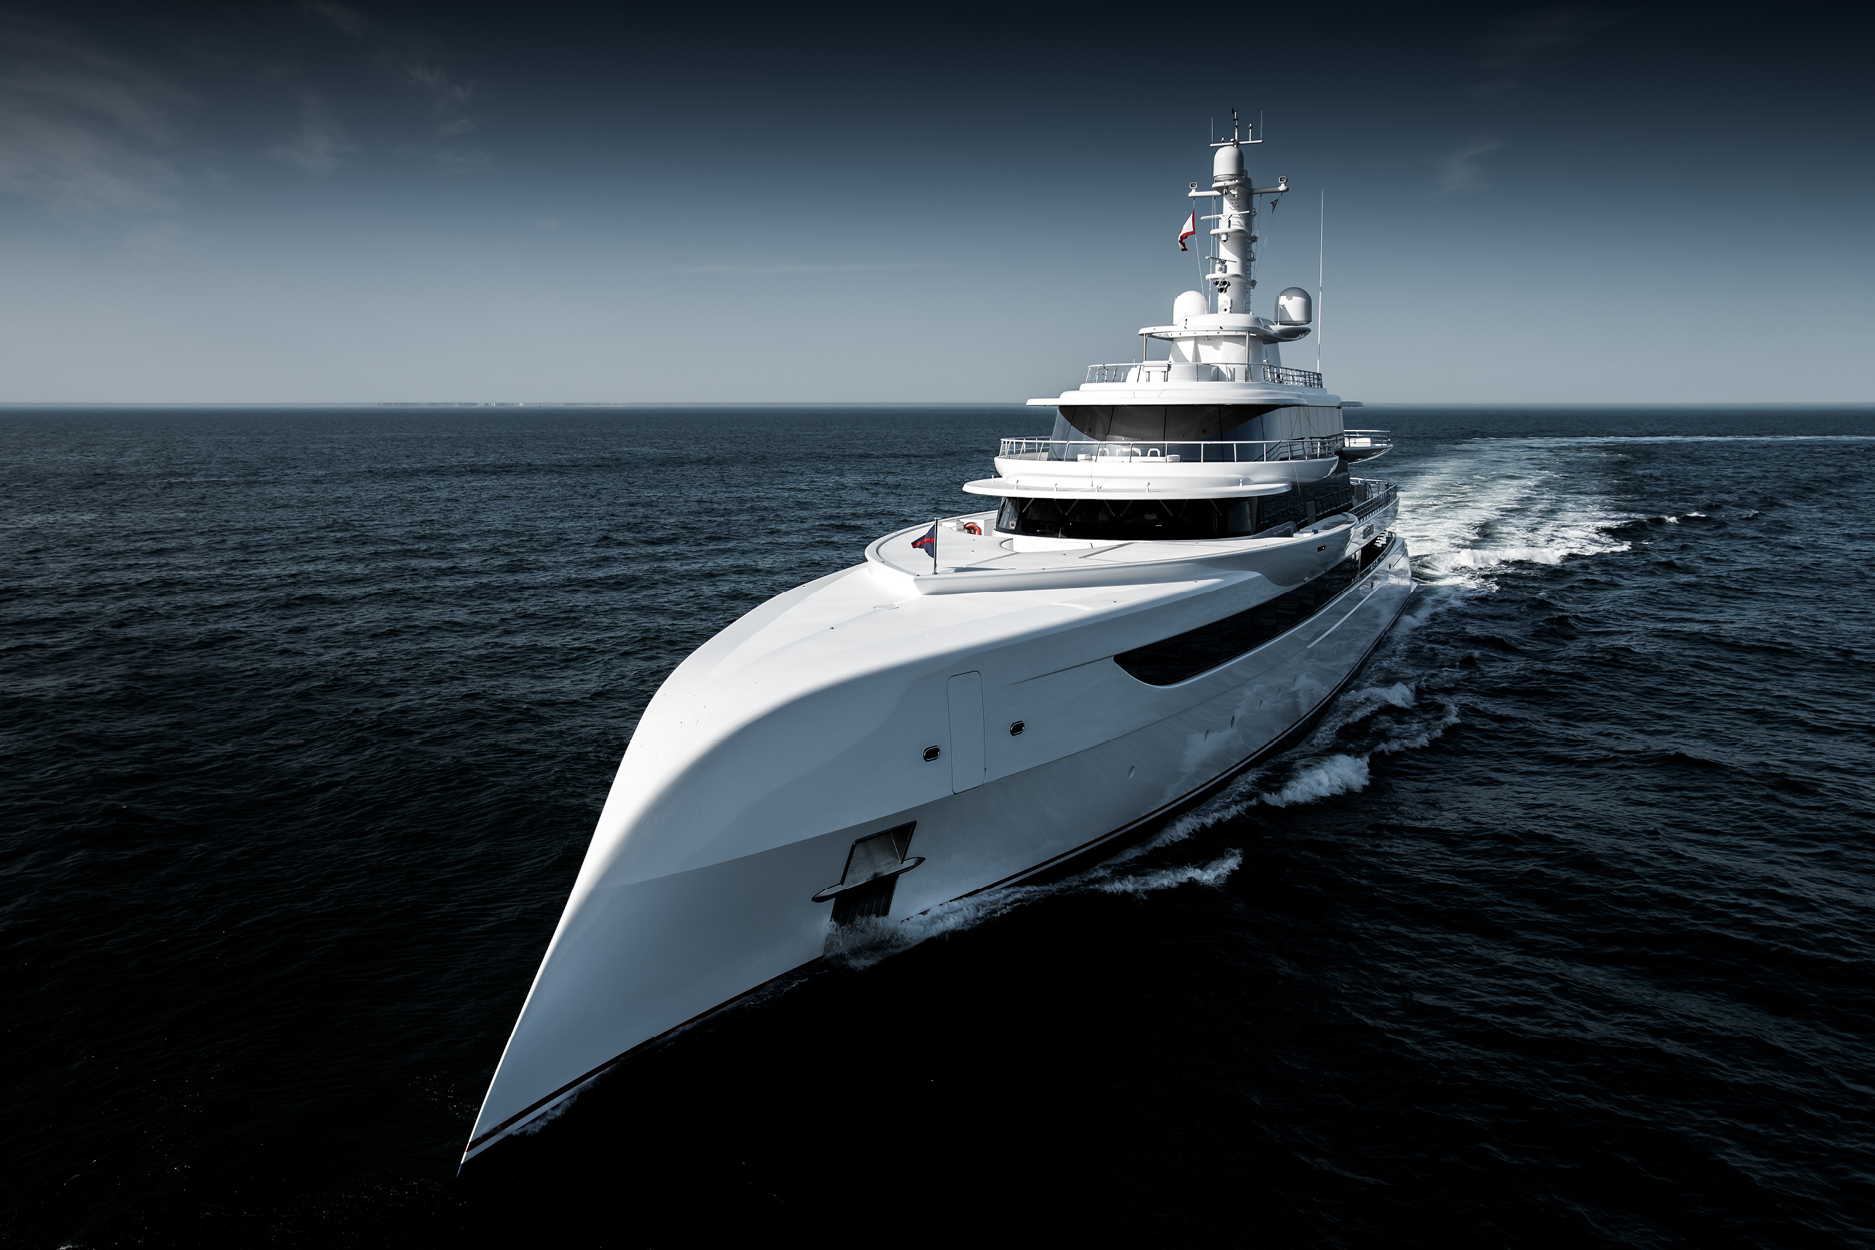 Location d’un yacht de luxe à 1 100 000 $ US par semaine